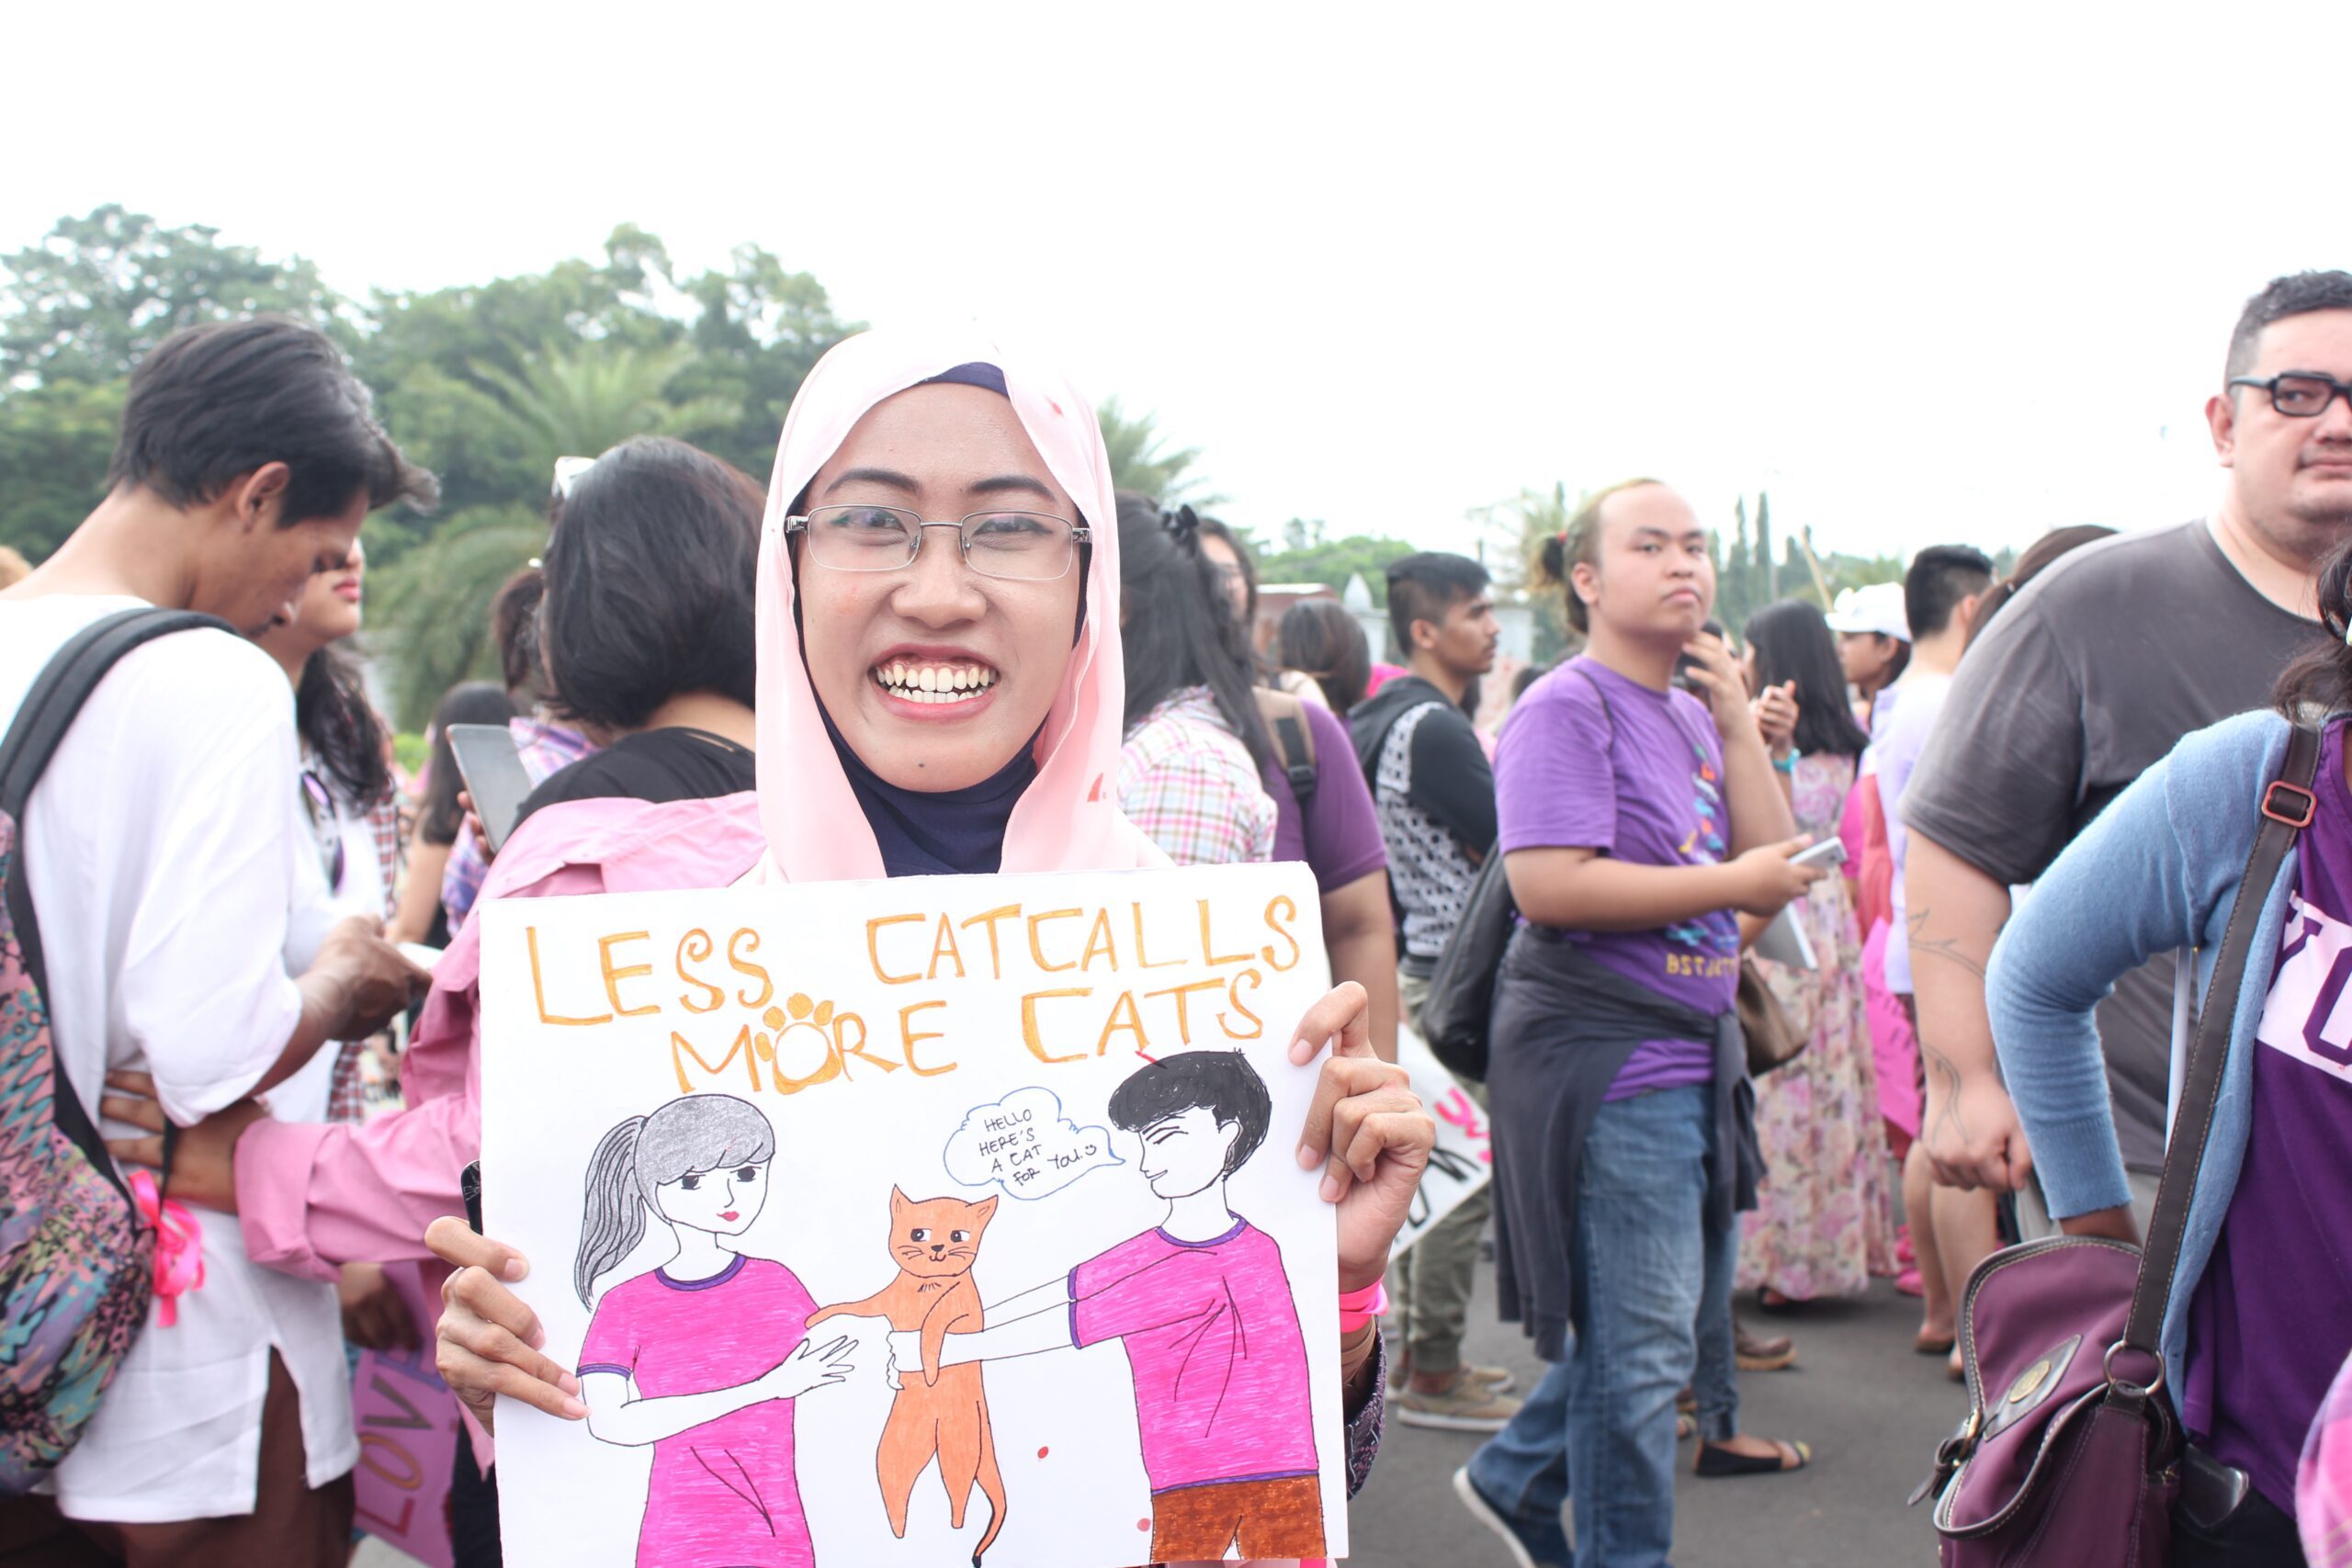 Patriarki yang membutakan: Mengapa Indonesia butuh Women’s March